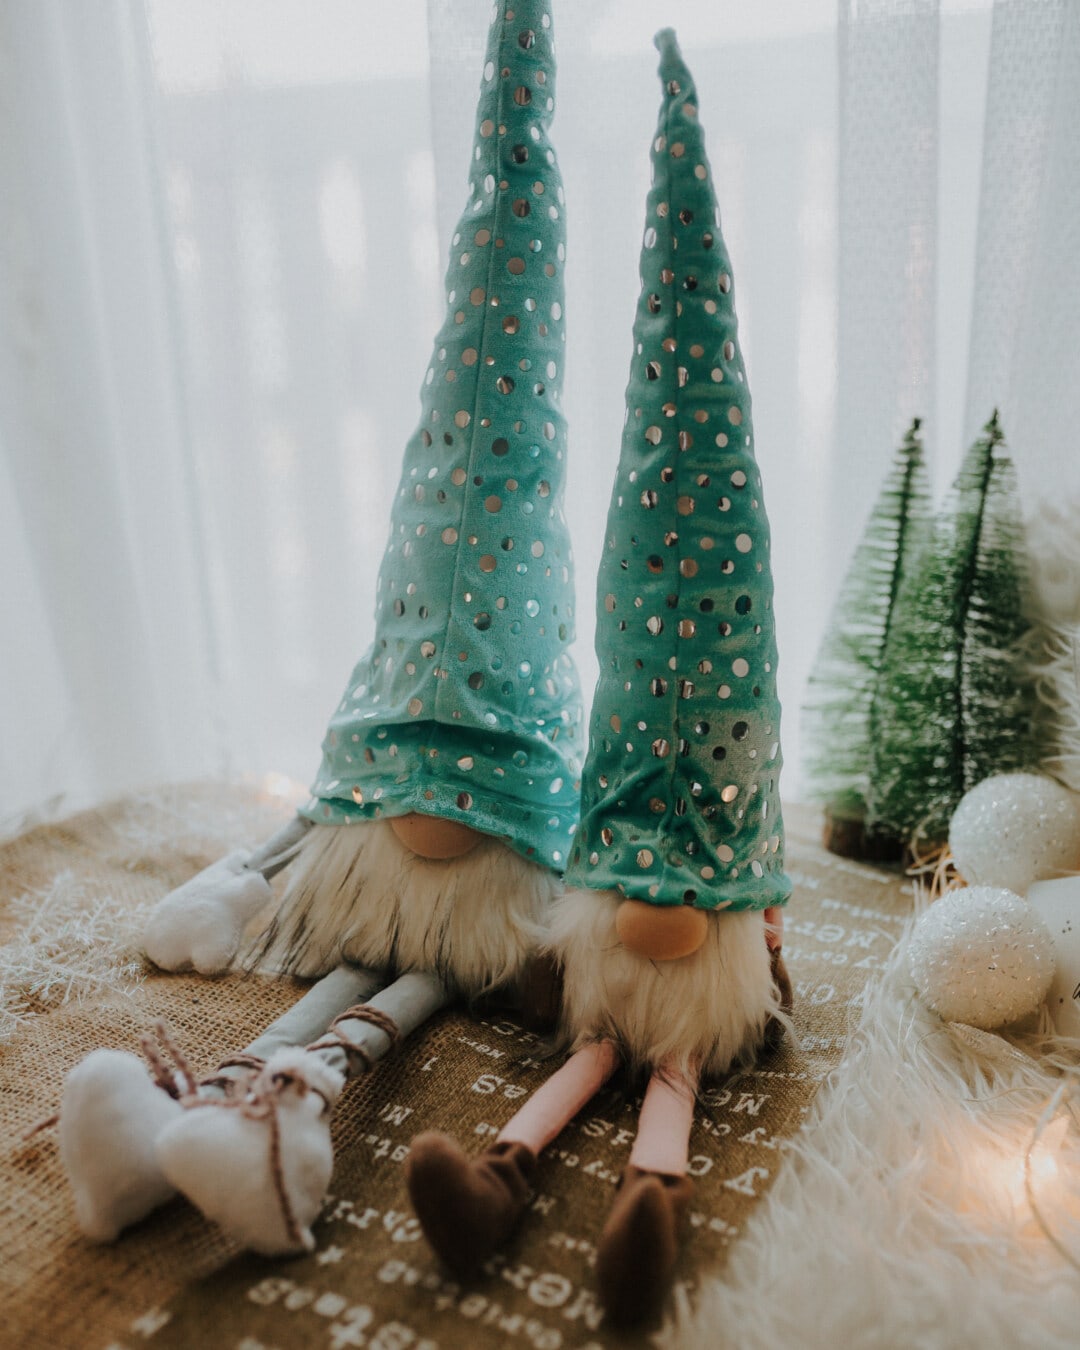 καπέλο, αστείο, Νάνος, κούκλες, δώρα, παιχνίδια, Χριστούγεννα, παραδοσιακό, σκούρο πράσινο, διακόσμηση